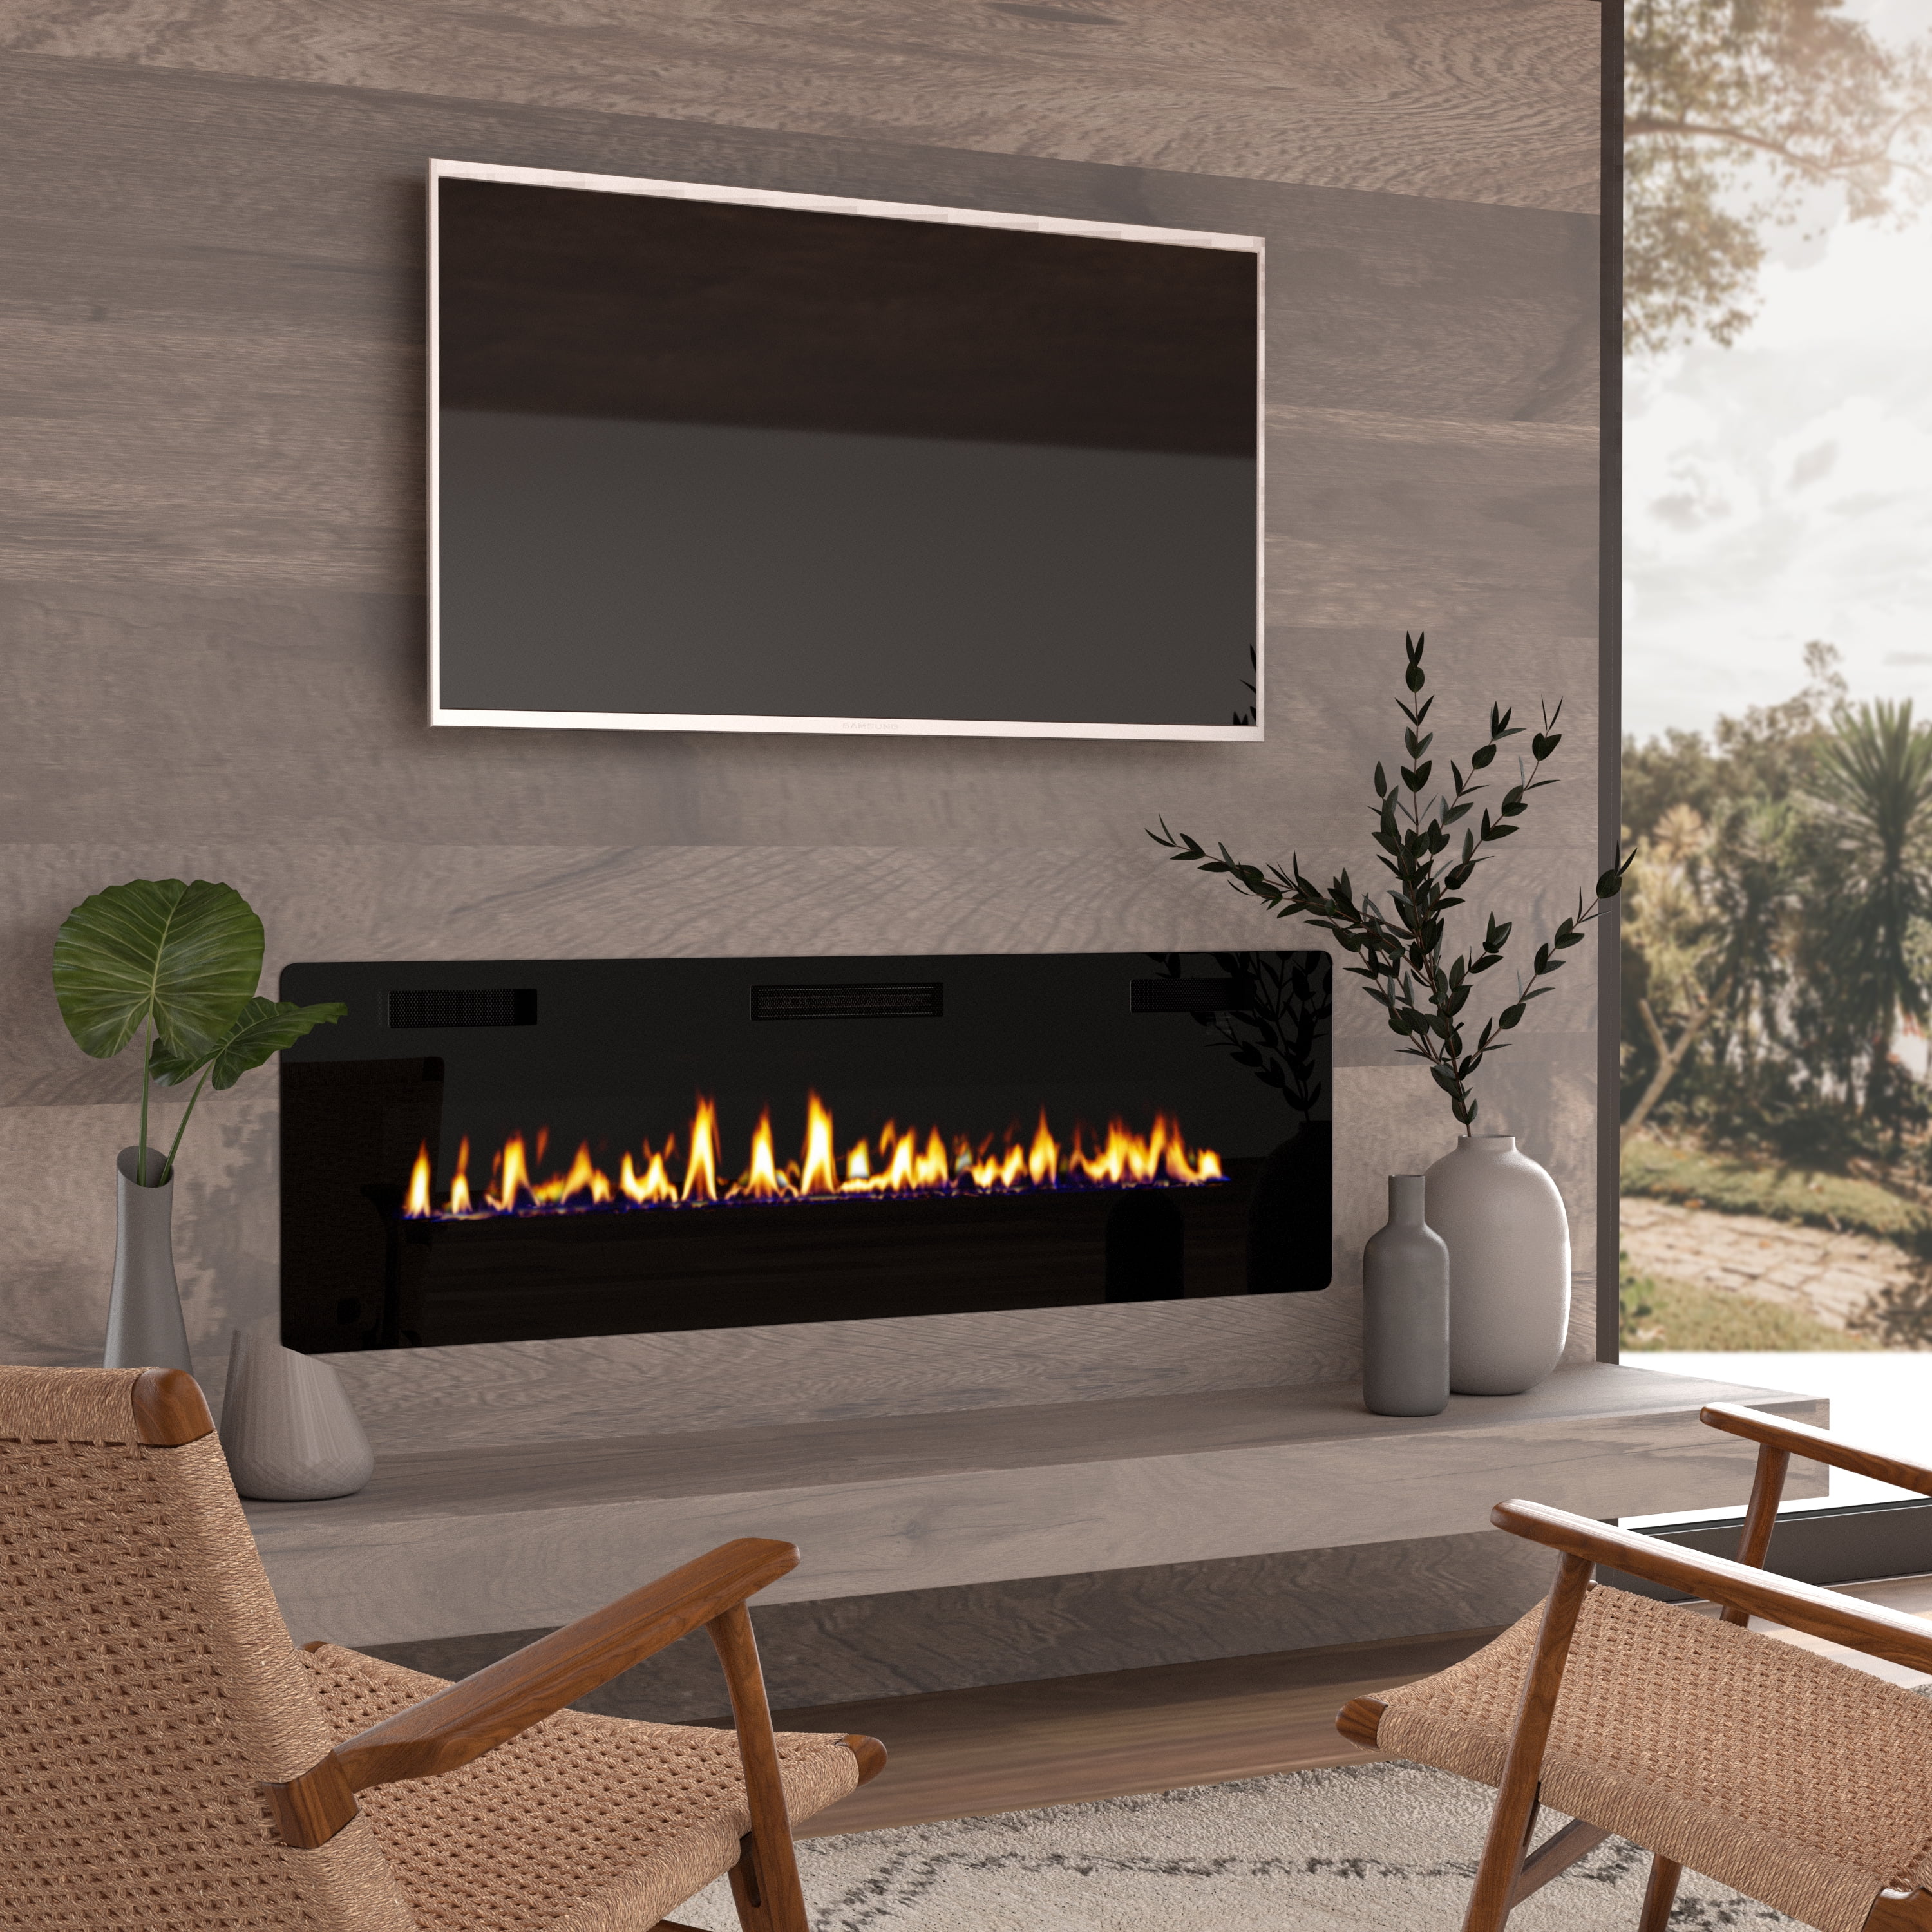 OKADA 60" Electric Fireplace Insert, 3.86" Ultra Thin Wall Mounted/ In